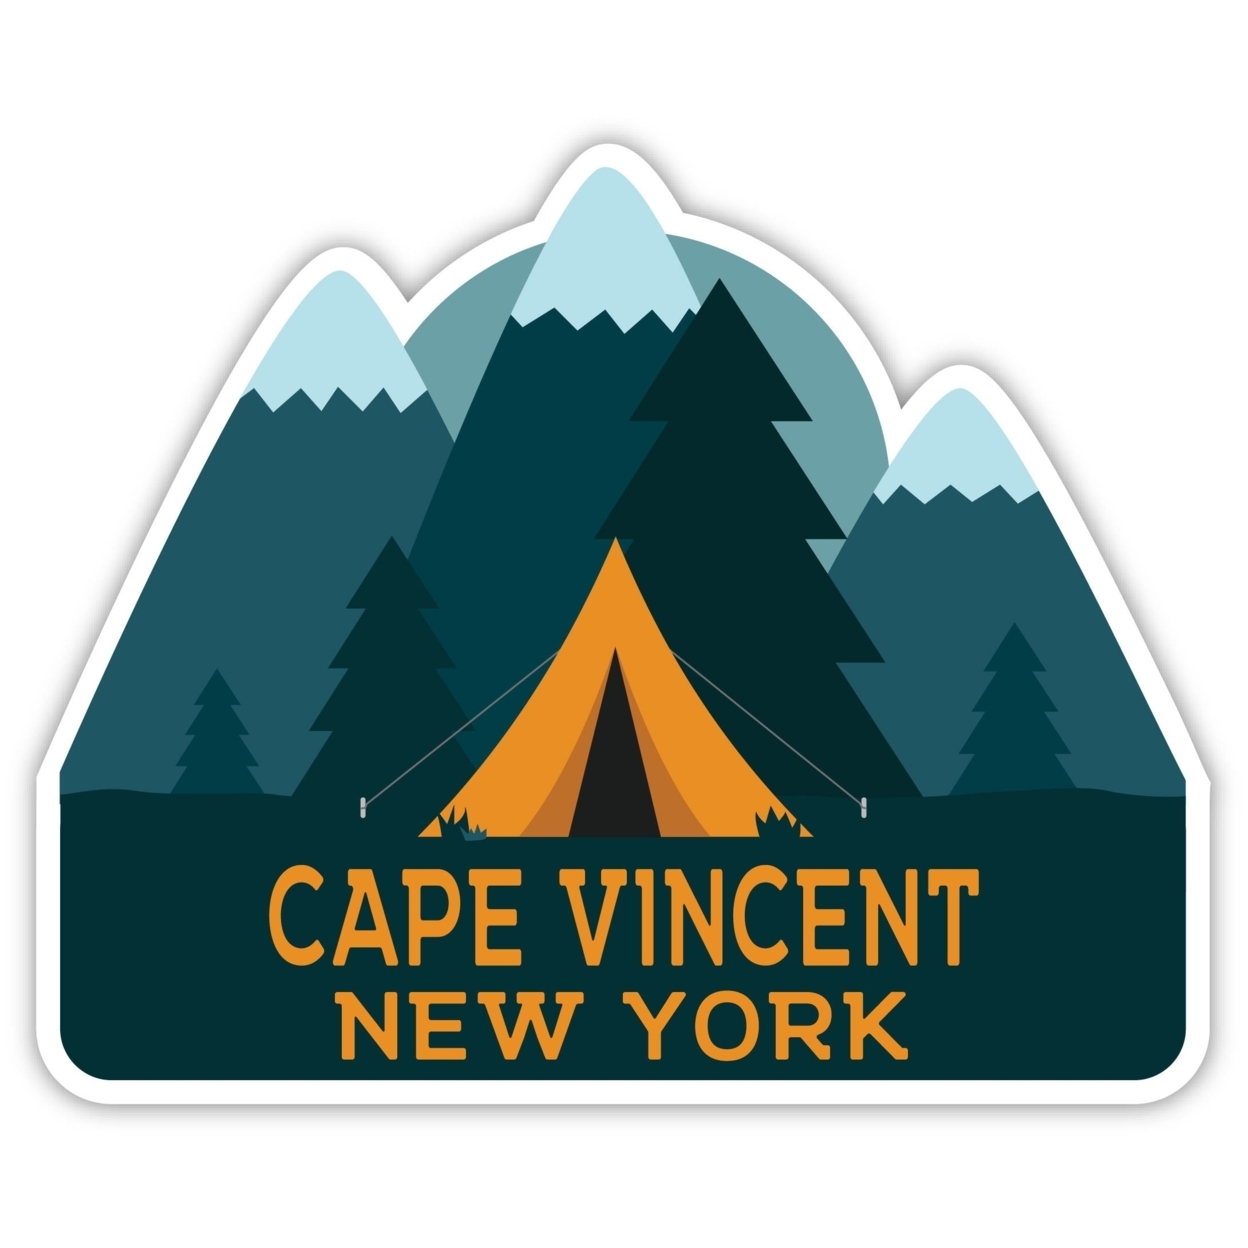 Cape Vincent New York Souvenir Decorative Stickers (Choose Theme And Size) - Single Unit, 12-Inch, Tent